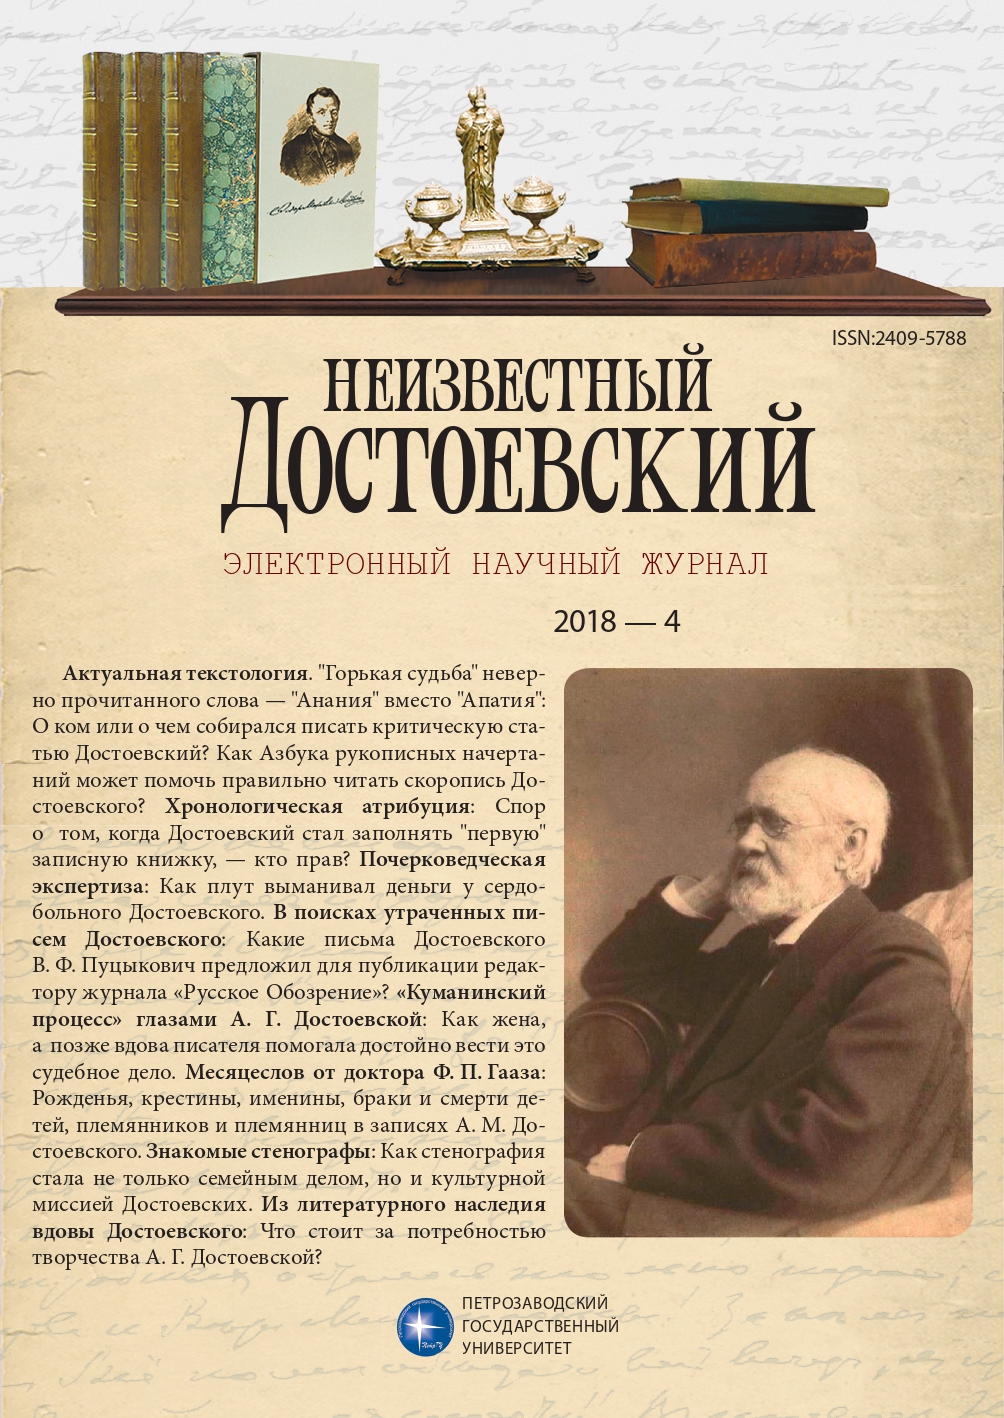 Графические особенности рукописей Достоевского: материалы для информационной базы данных